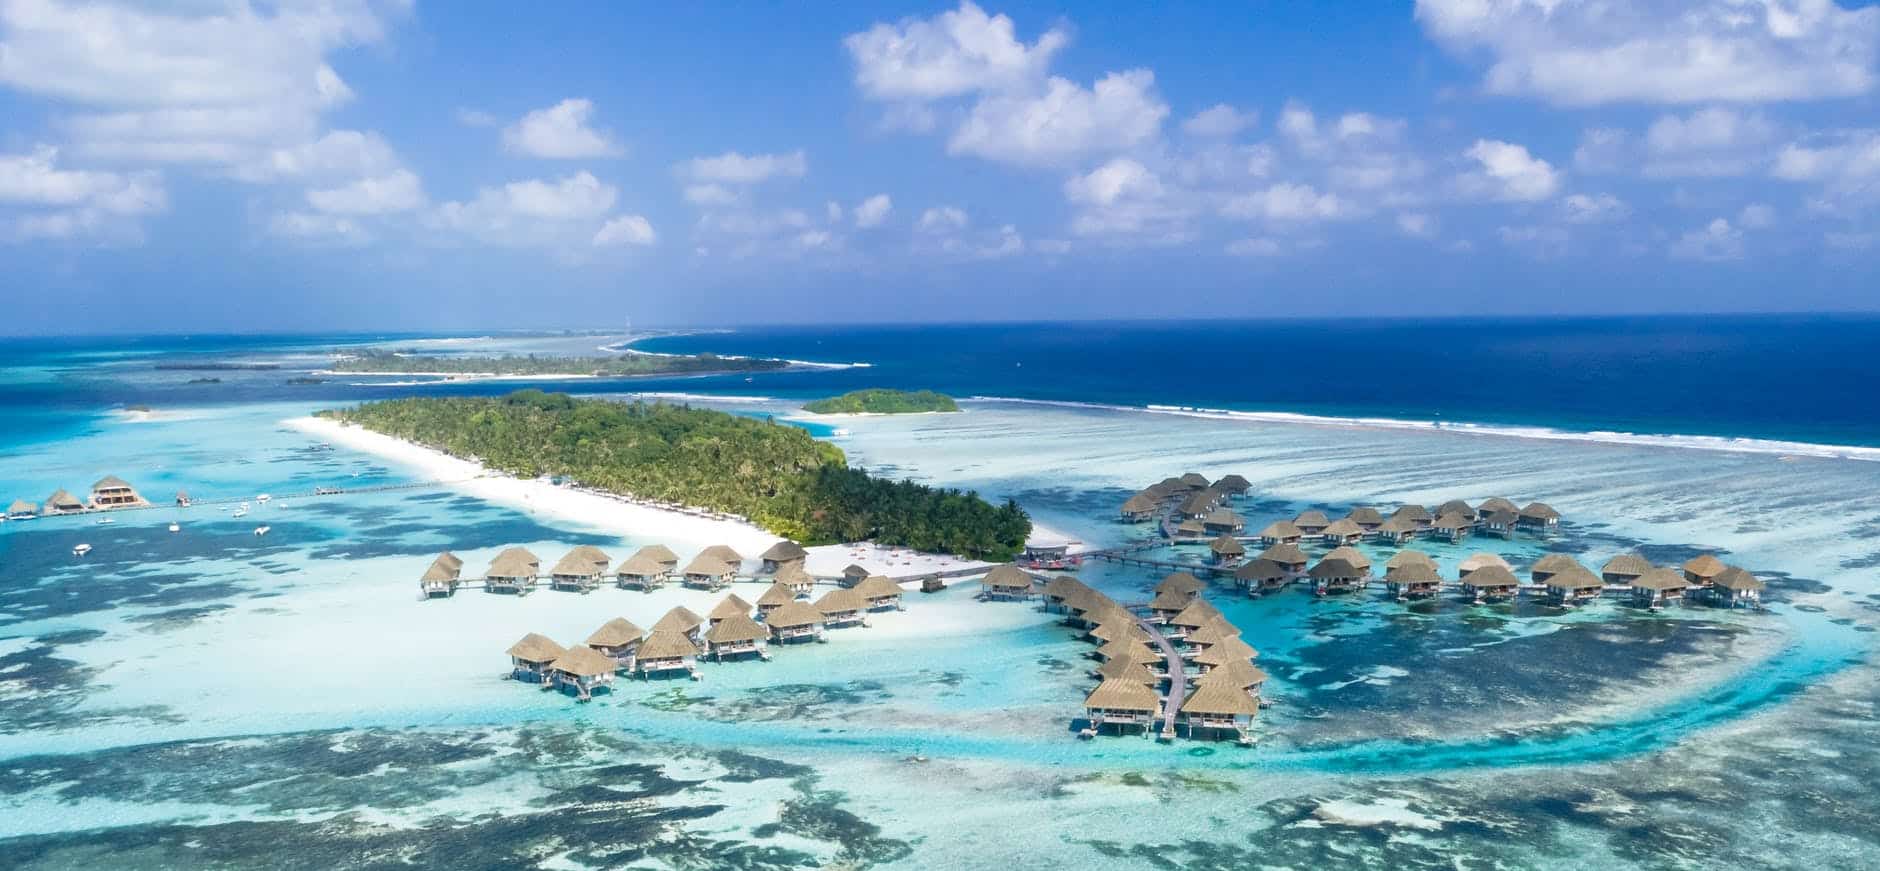 Consejos y experiencias en islas turísticas de Maldivas: ¿un viaje al paraíso?